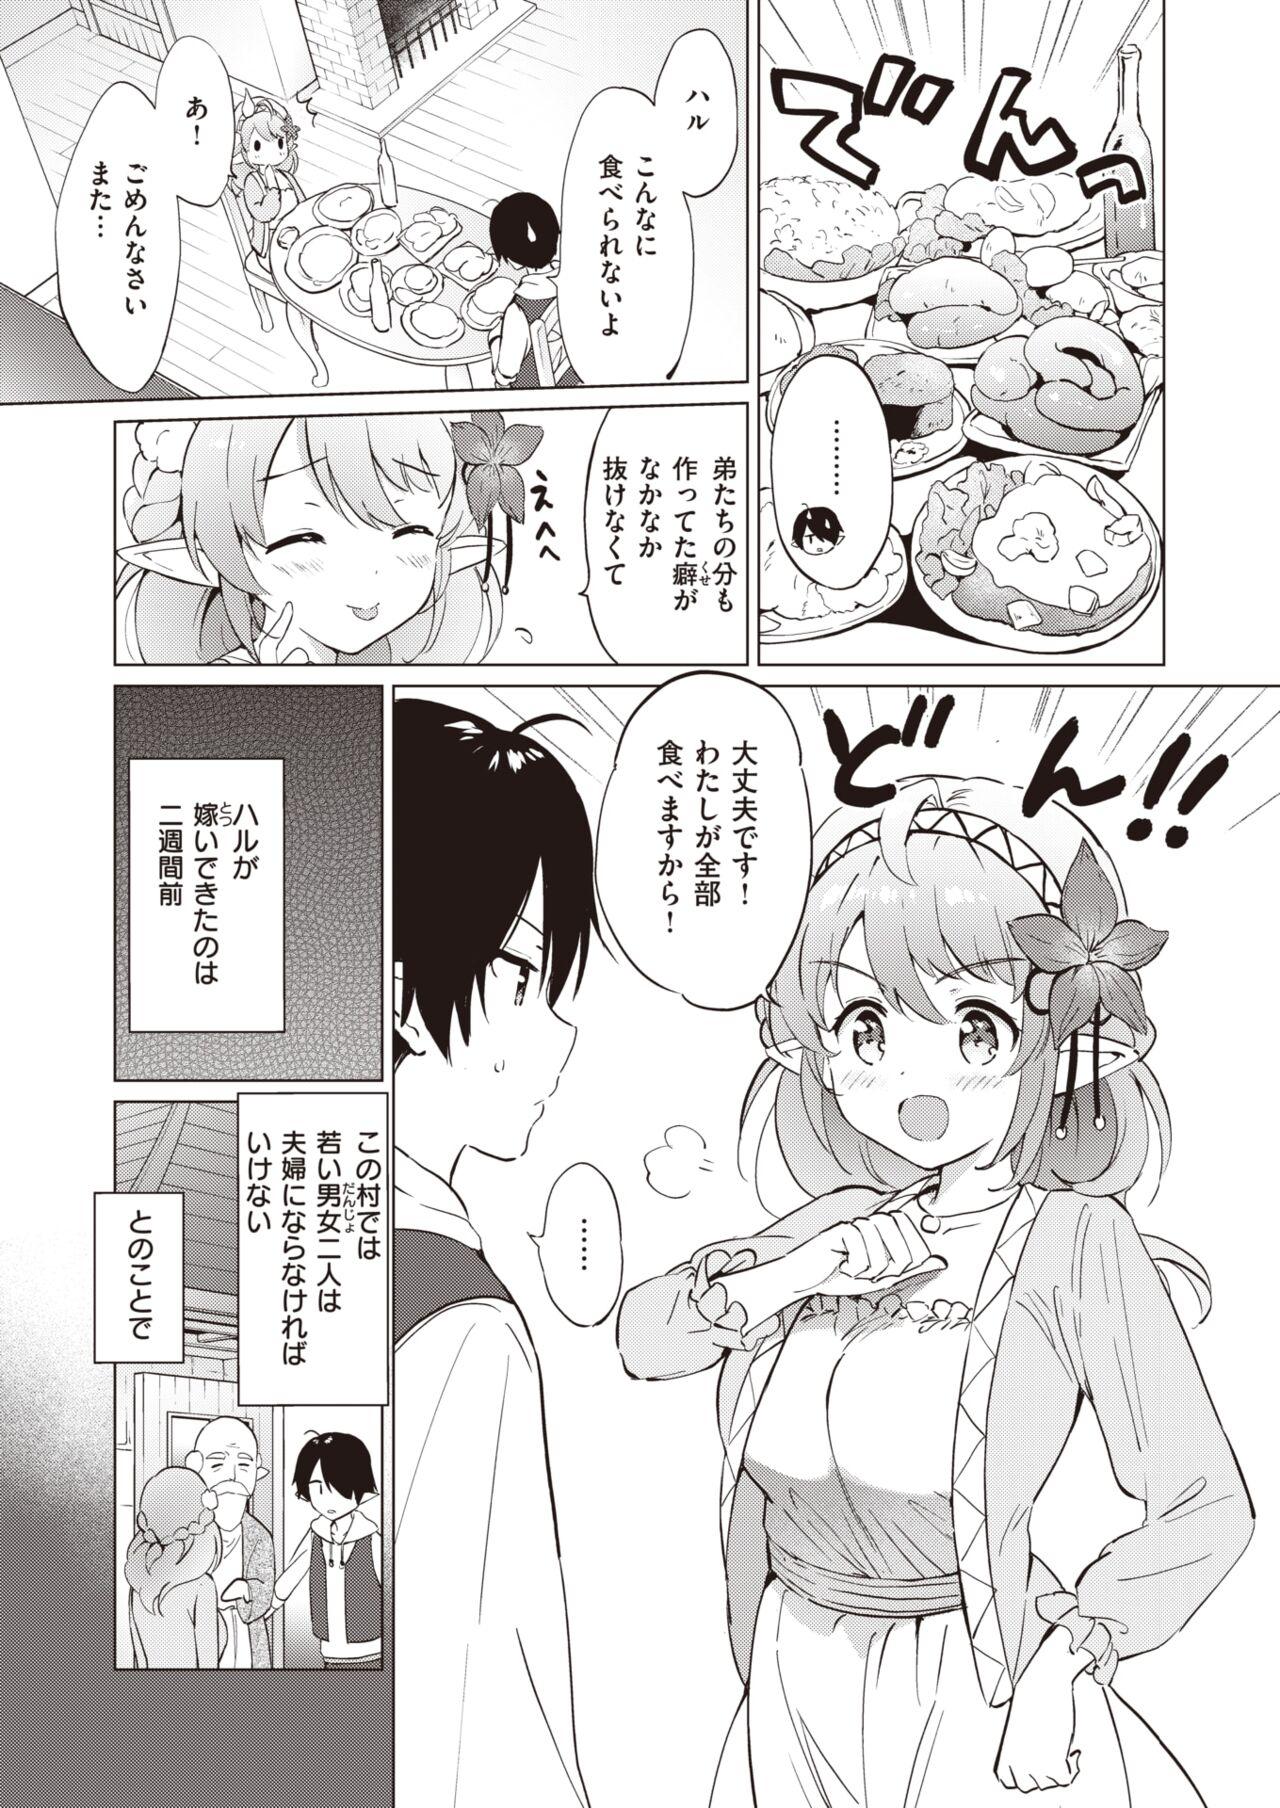 Sologirl Elf Yome no iru Kurashi 1-4.5 Spooning - Page 4